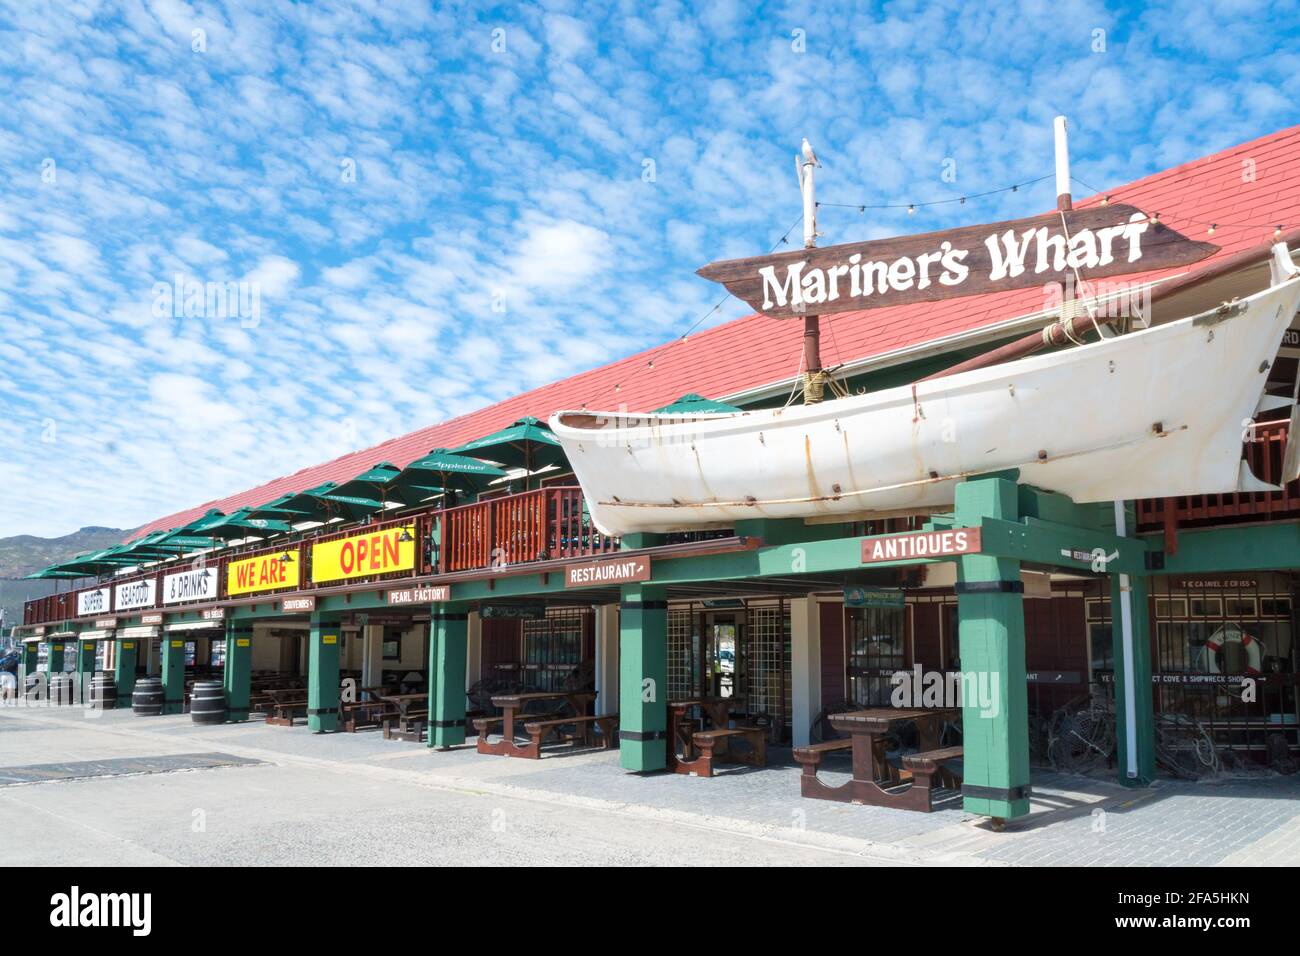 Mariners Wharf dans le port de Hout Bay, le Cap, Afrique du Sud qui est une destination touristique et un restaurant Banque D'Images